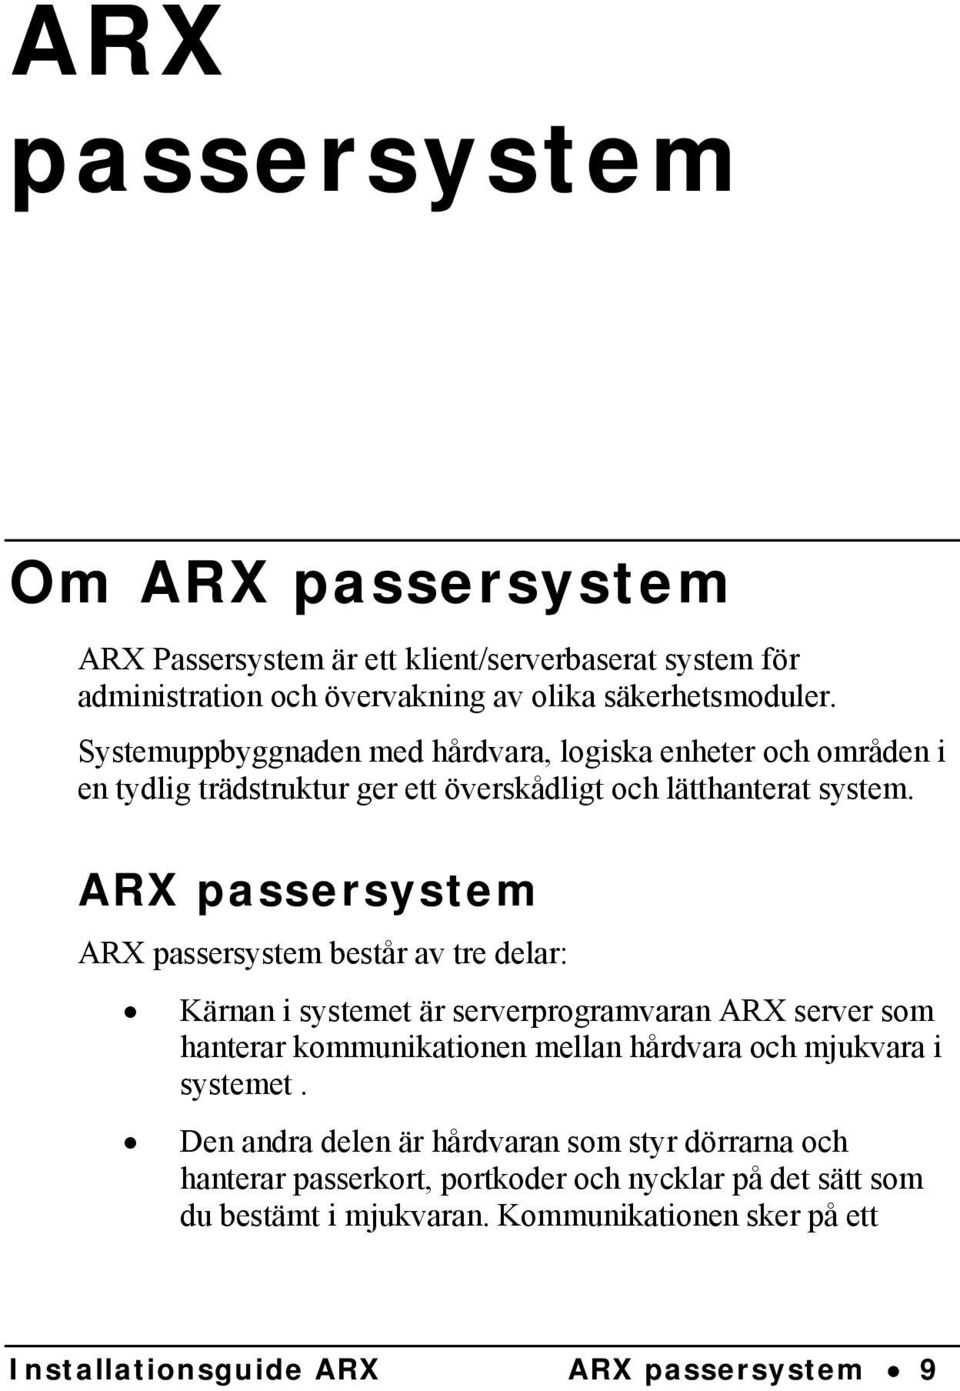 ARX passersystem ARX passersystem består av tre delar: Kärnan i systemet är serverprogramvaran ARX server som hanterar kommunikationen mellan hårdvara och mjukvara i